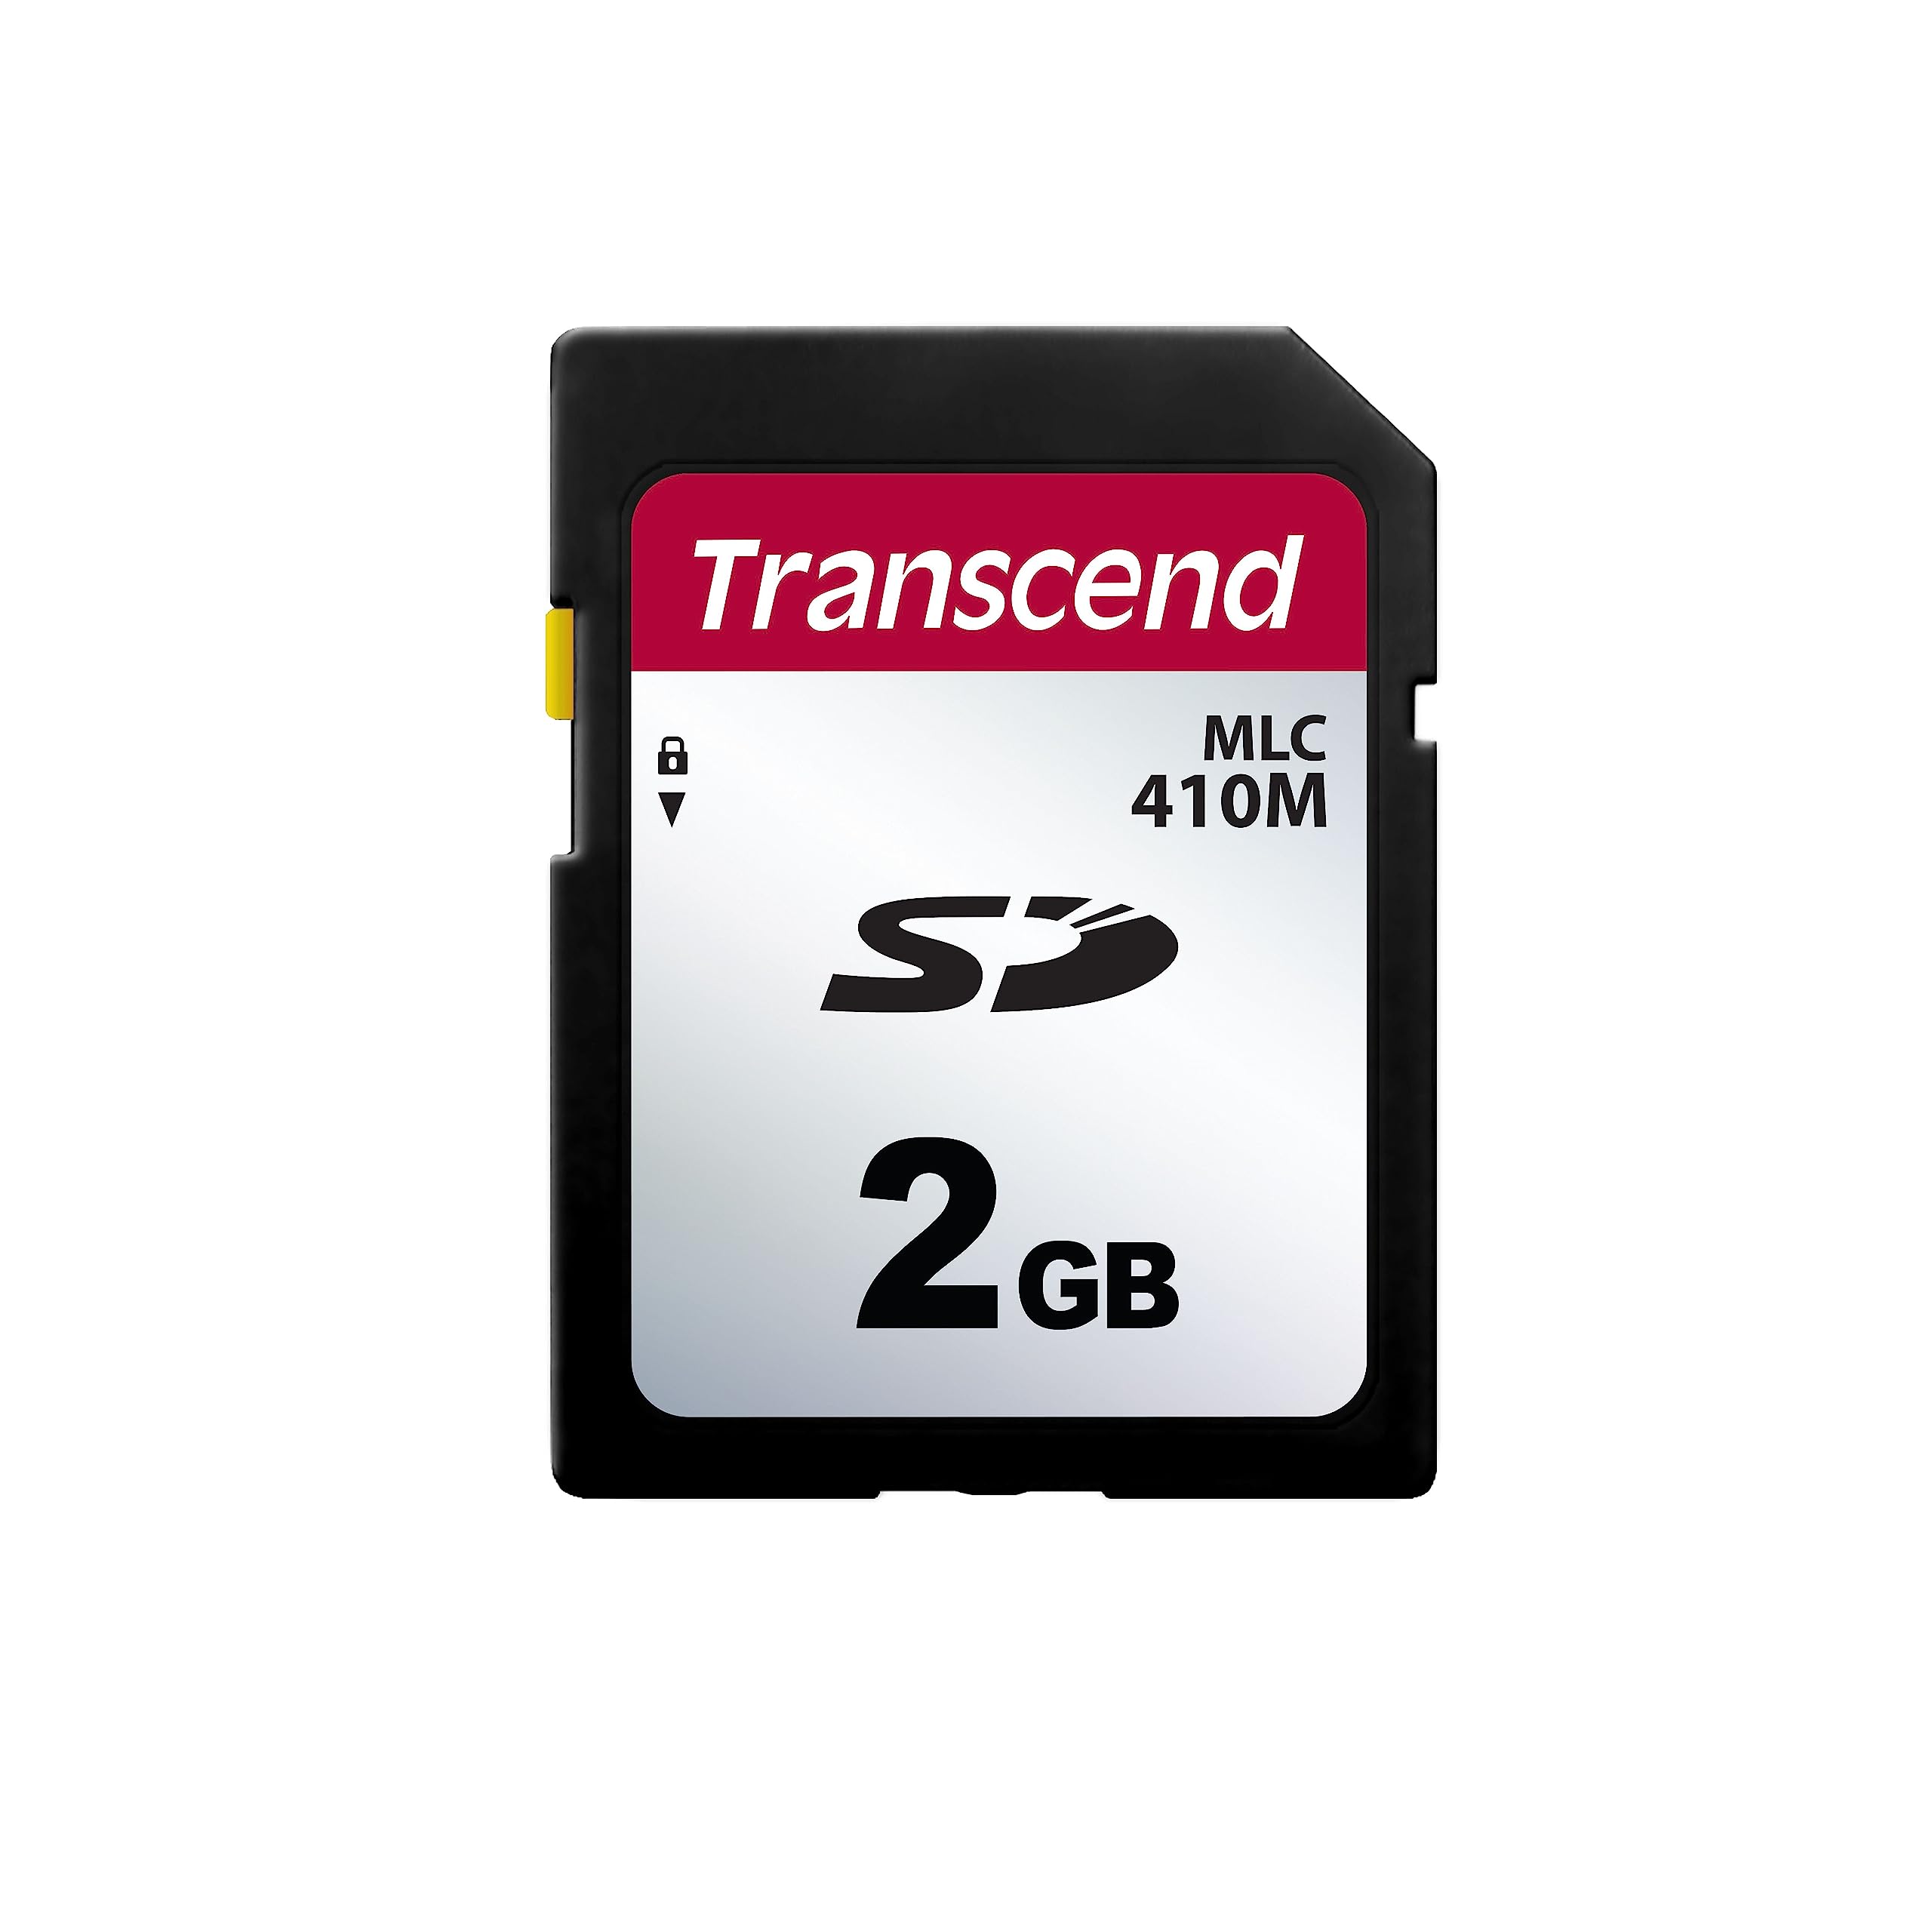 トランセンドジャパン Transcend法人(ビジネス)向け 業務用/産業用SDカード 2GB Samsung製2D (2bit)MLC NAND採用 高耐久 2年保証 TS2GSDC